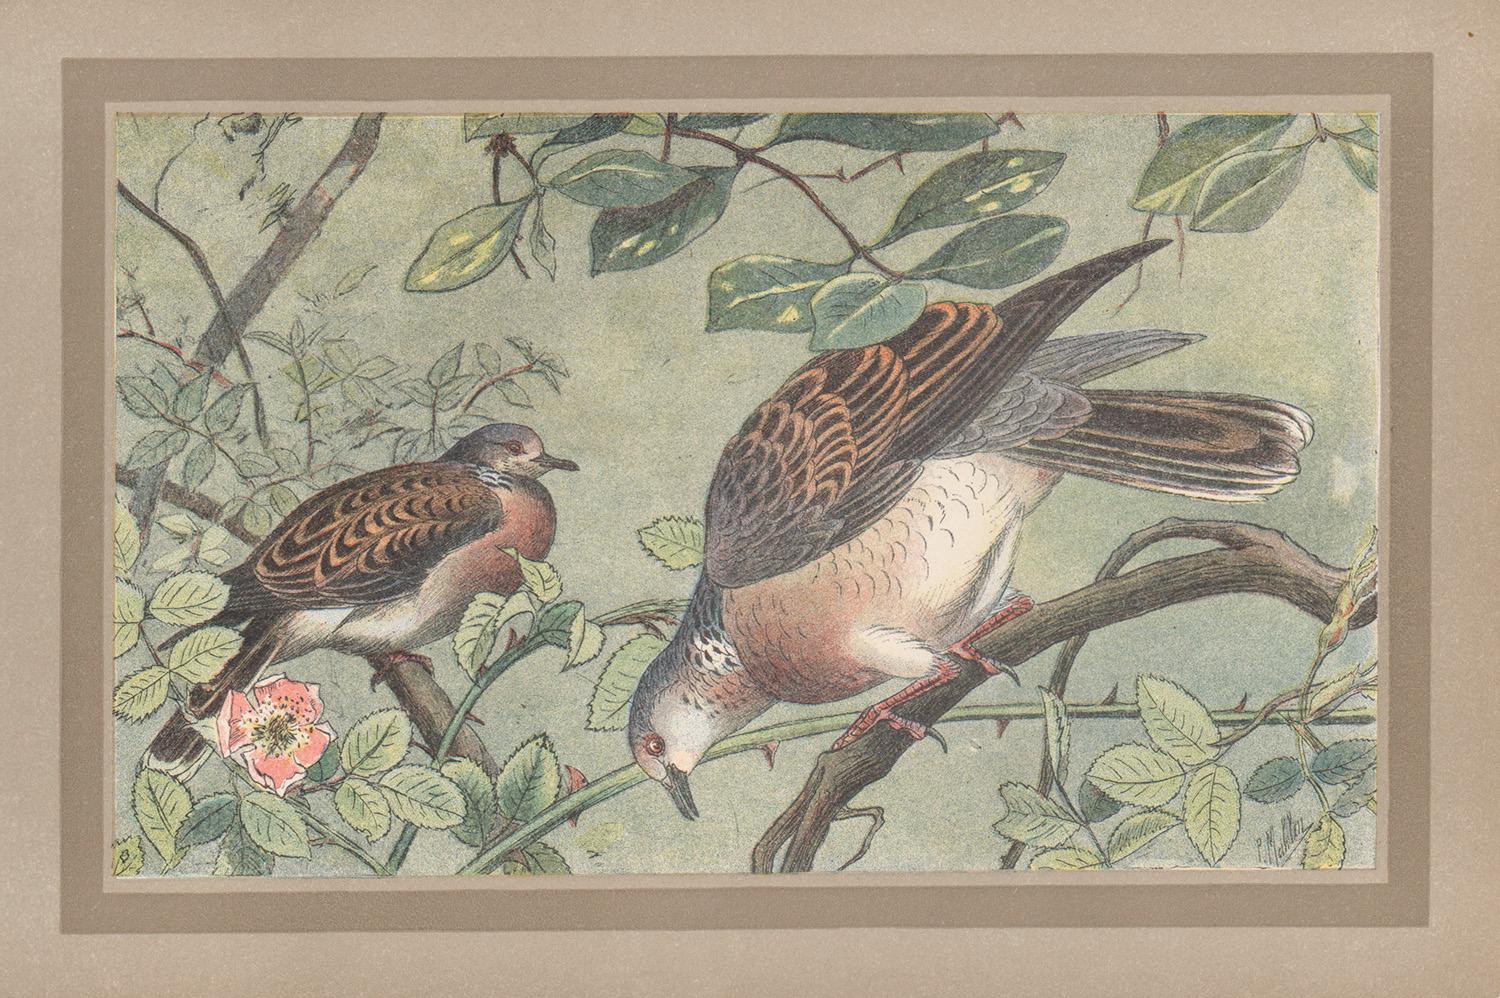 Schildkröte Taube, französischer antiker Vogel aus der Naturgeschichte  Kunstdruck mit Illustrationsdruck